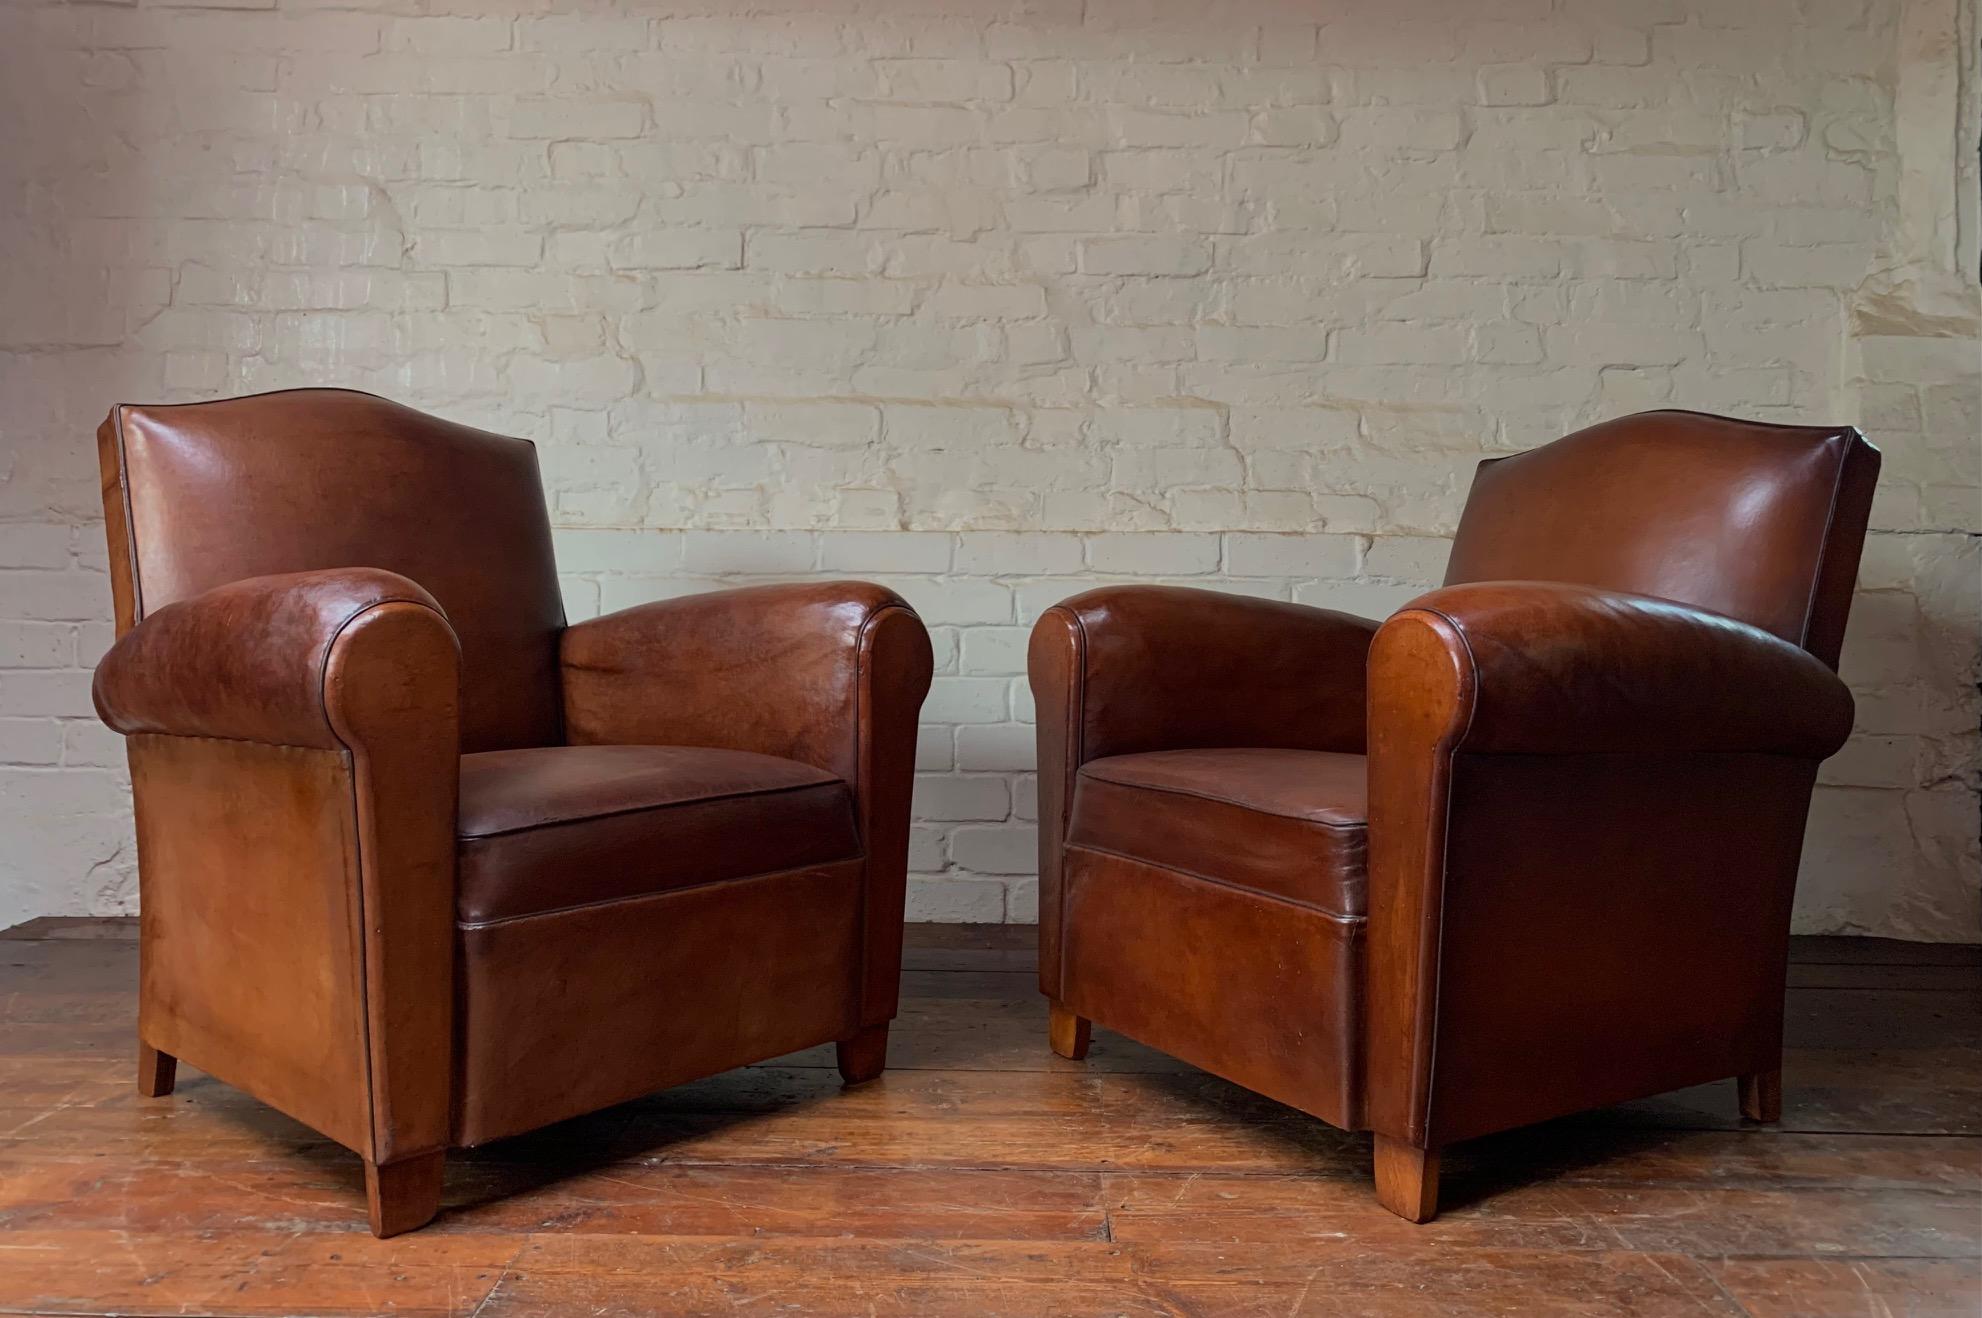 Das sind wunderschöne Stühle. Das originale havannabraune Leder ist perfekt gealtert. Nach der Reinigung und Pflege hat das Leder eine wunderschöne Patina aus hellem Braun und Kastanie angenommen. Der Zustand dieser Stühle ist nahezu perfekt und das